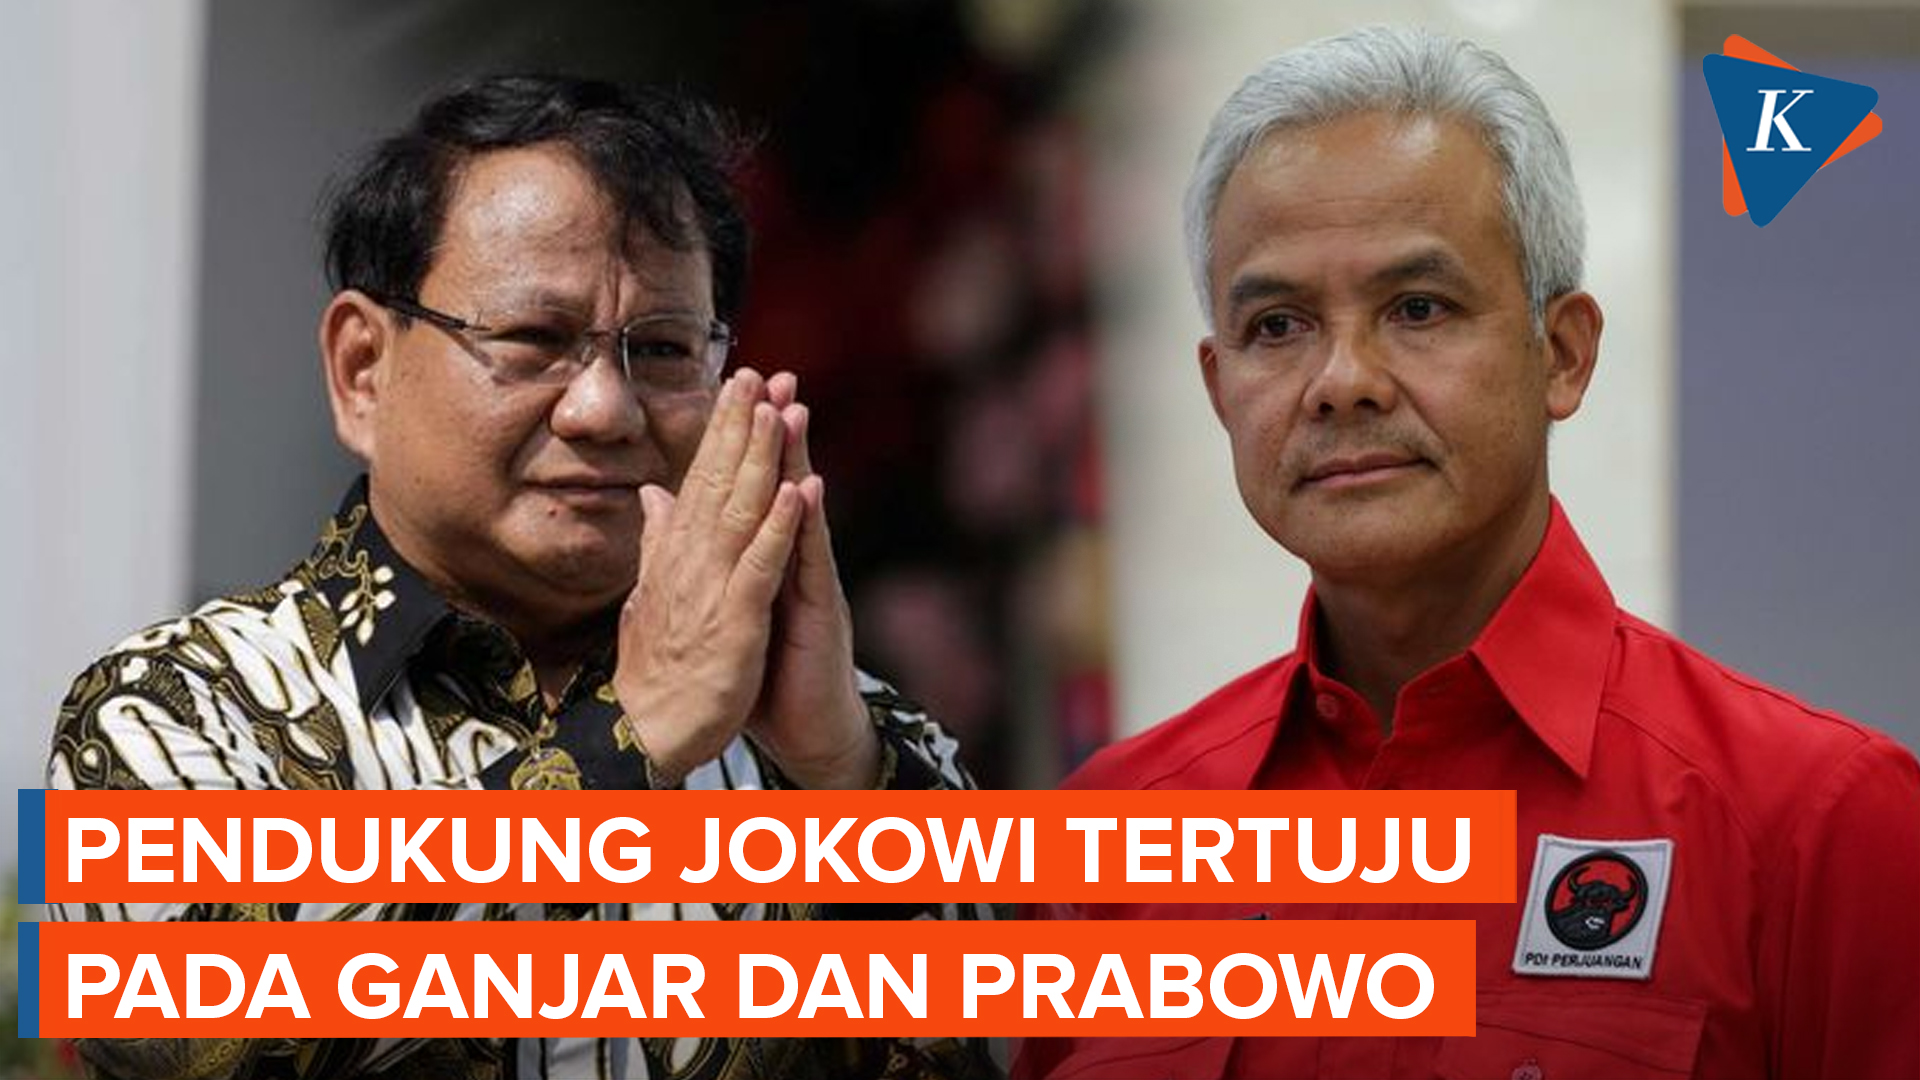 Pendukung Jokowi Disebut Banyak Tertuju ke Ganjar dan Prabowo